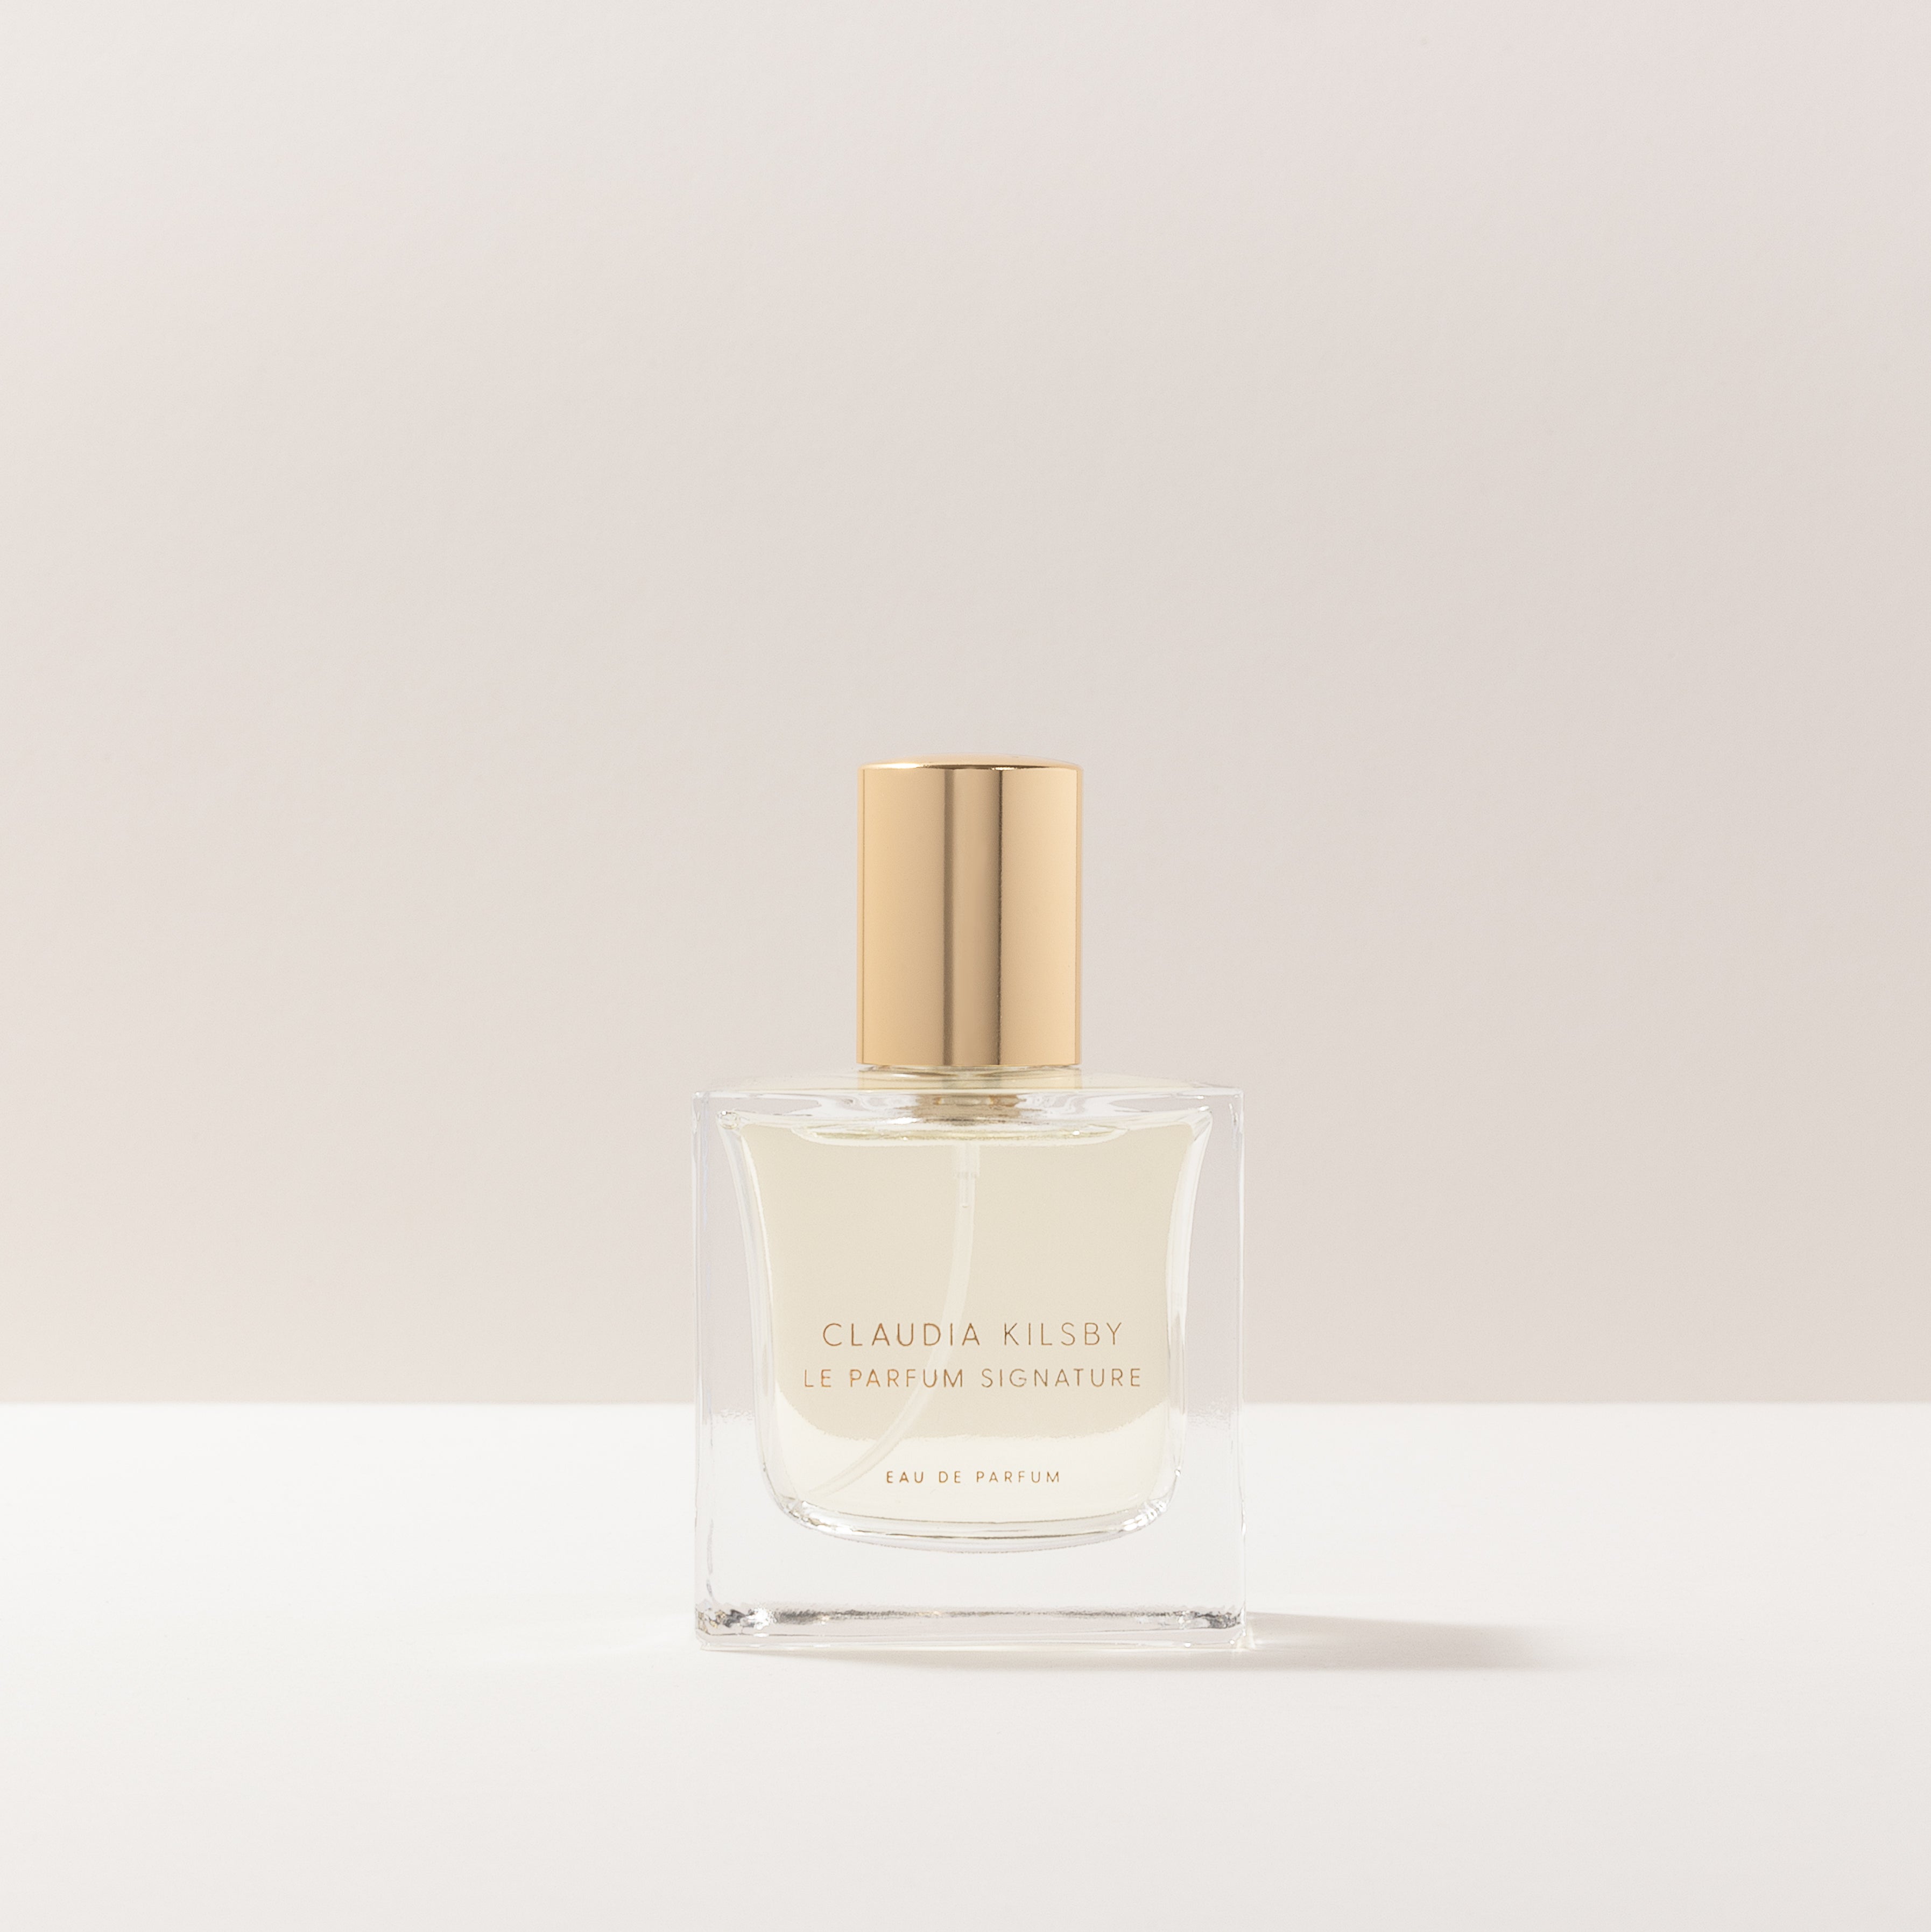 Le Parfum Signature – Claudia Kilsby